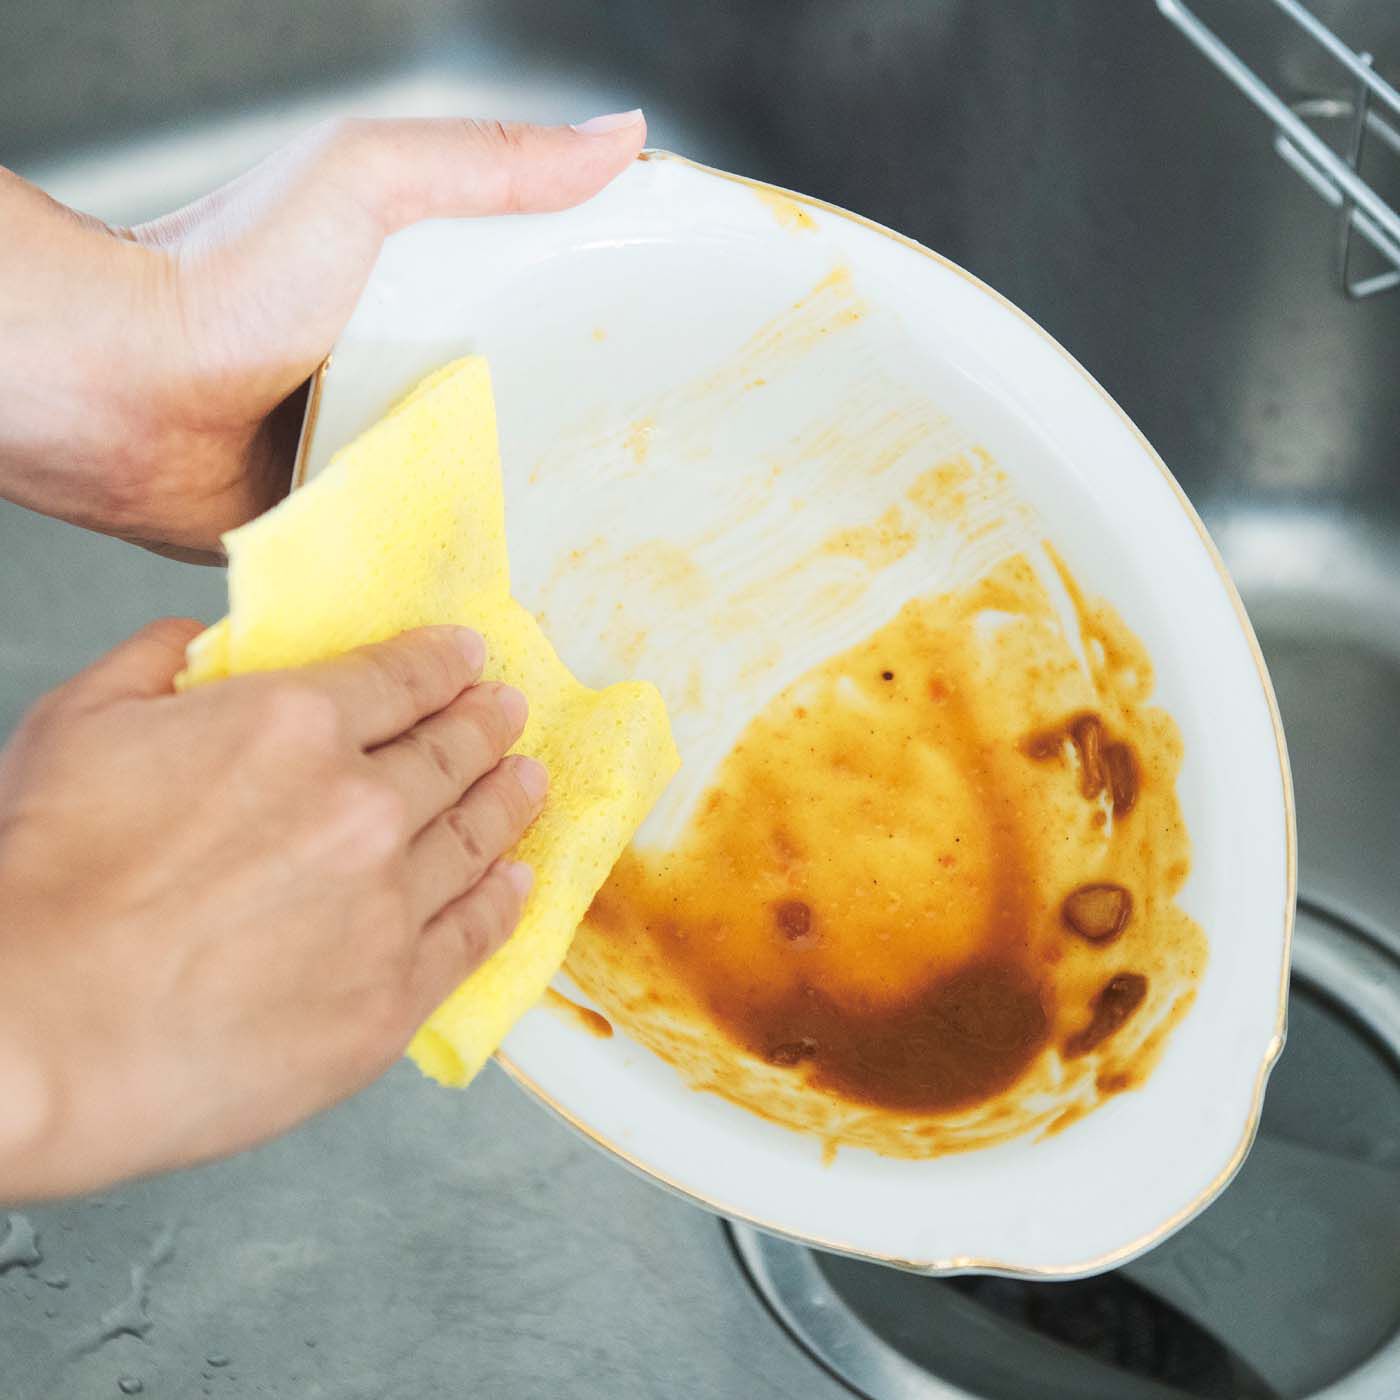 フェリシモの雑貨 クラソ|1/d after Curry ペーパースポンジの会|皿に残ったカレーをサッとふき取れば、食器洗いがらくちんに。